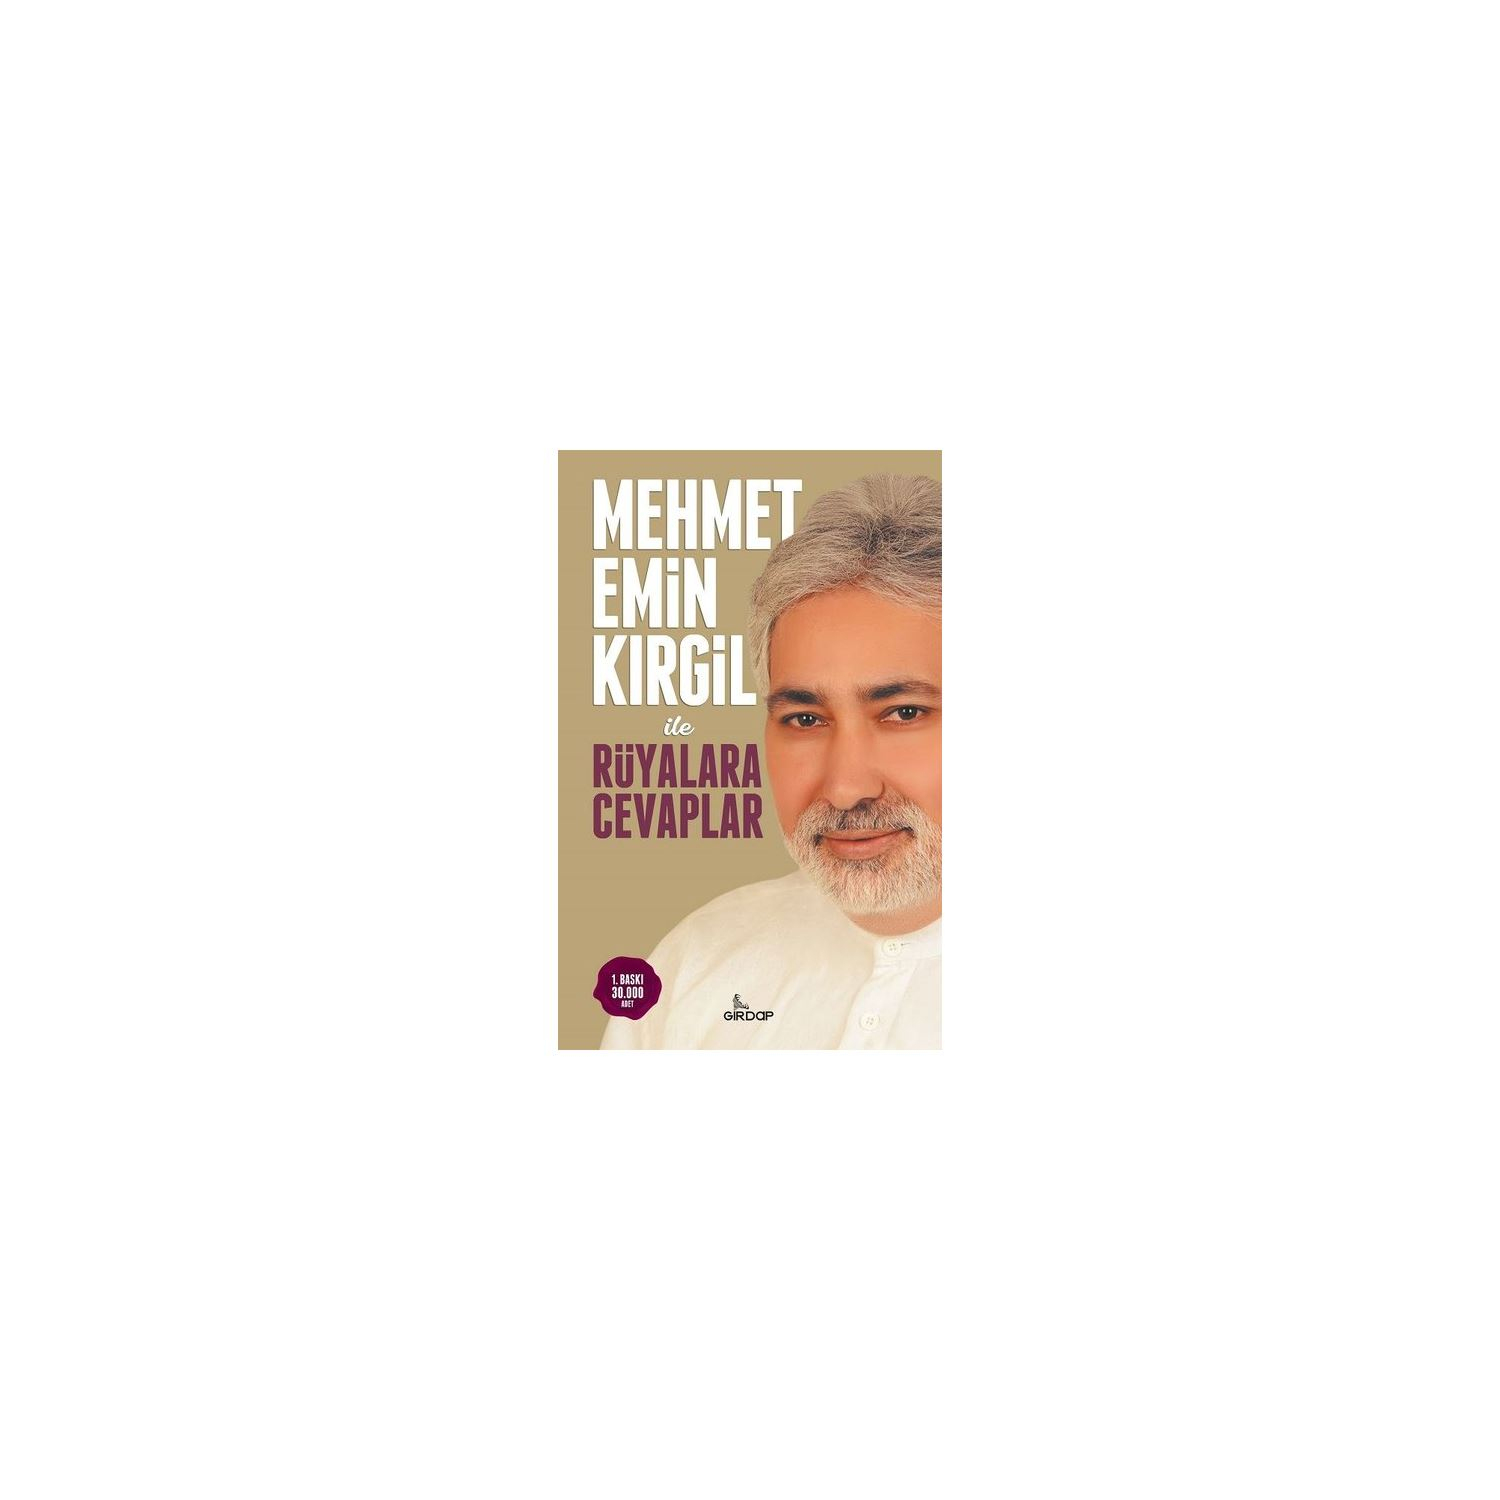 Mehmet Emin Kırgil İle Rüyalara Cevaplar | Deniz Shop fiçin Rüya Yorumcusu Mehmet Emin Kimdir